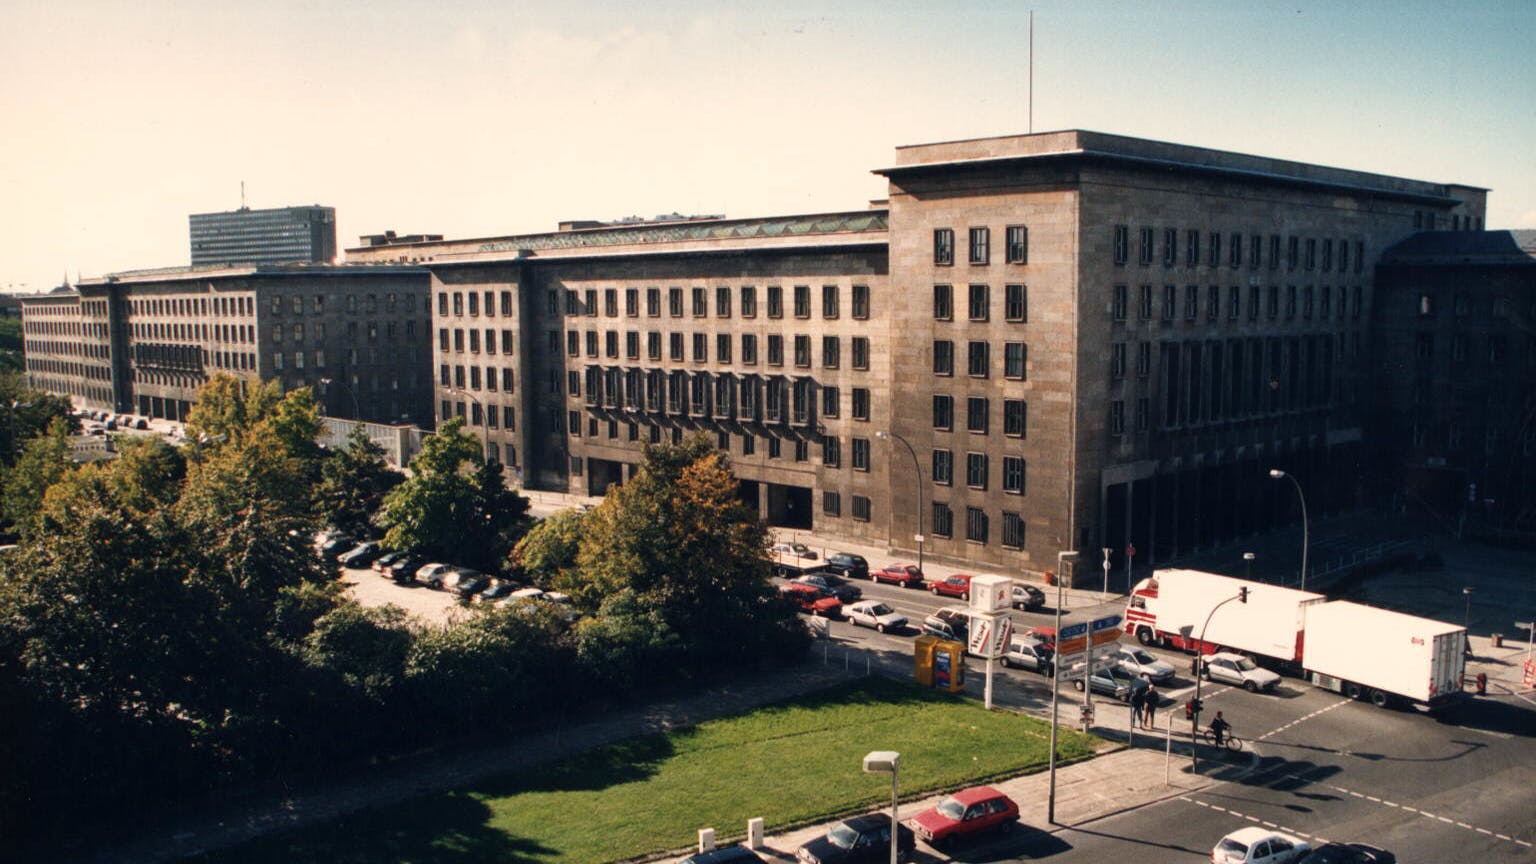 Detlev-Rohwedder-Haus, das Gebäude, in dem die Treuhand untergebracht war. Heute das Bundesfinanzministerium.